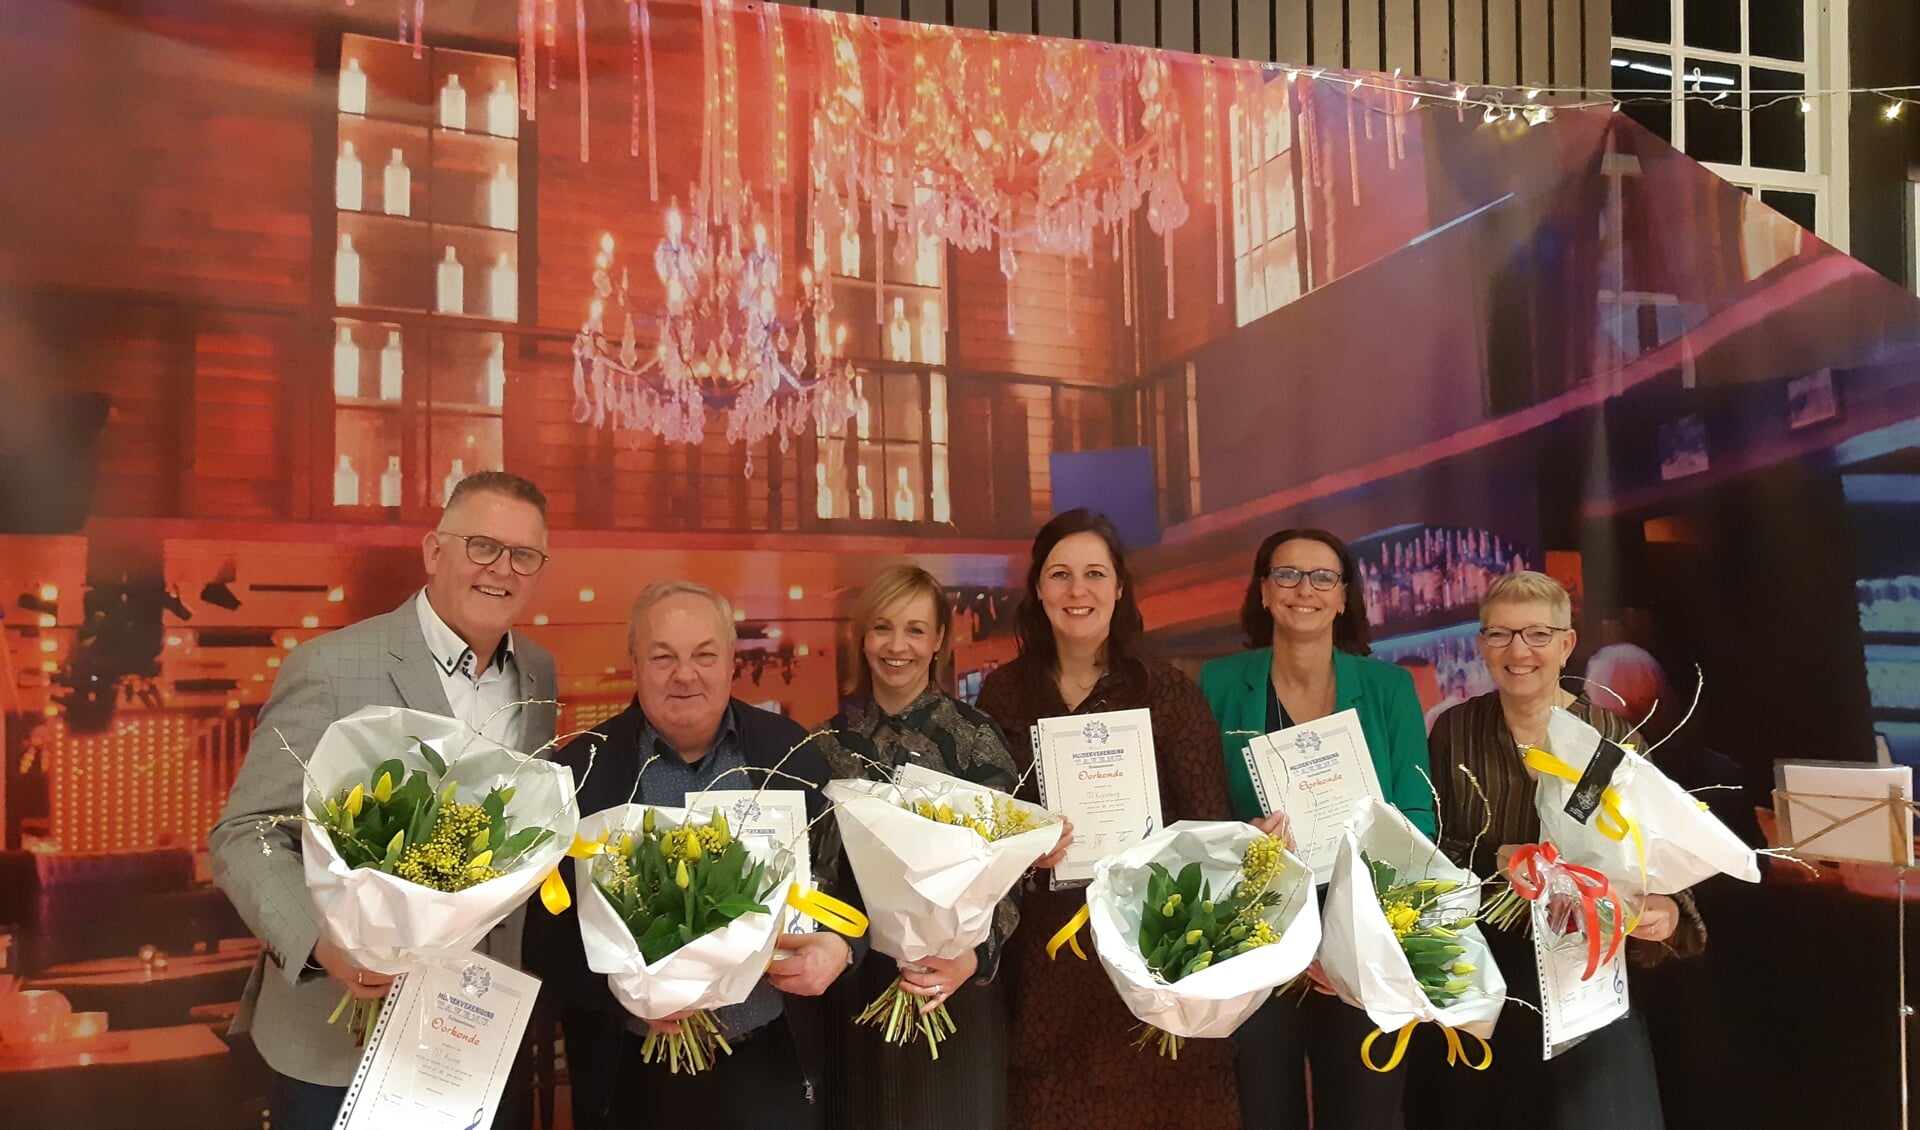 • Alle TAVENU jubilarissen op een rij, met van links naar rechts: René Kuzee, Joop van der Kleijn, Hanneke Verheij, Marjon Kuijlenburg, Ilja Veerbeek en Marja Verburg.